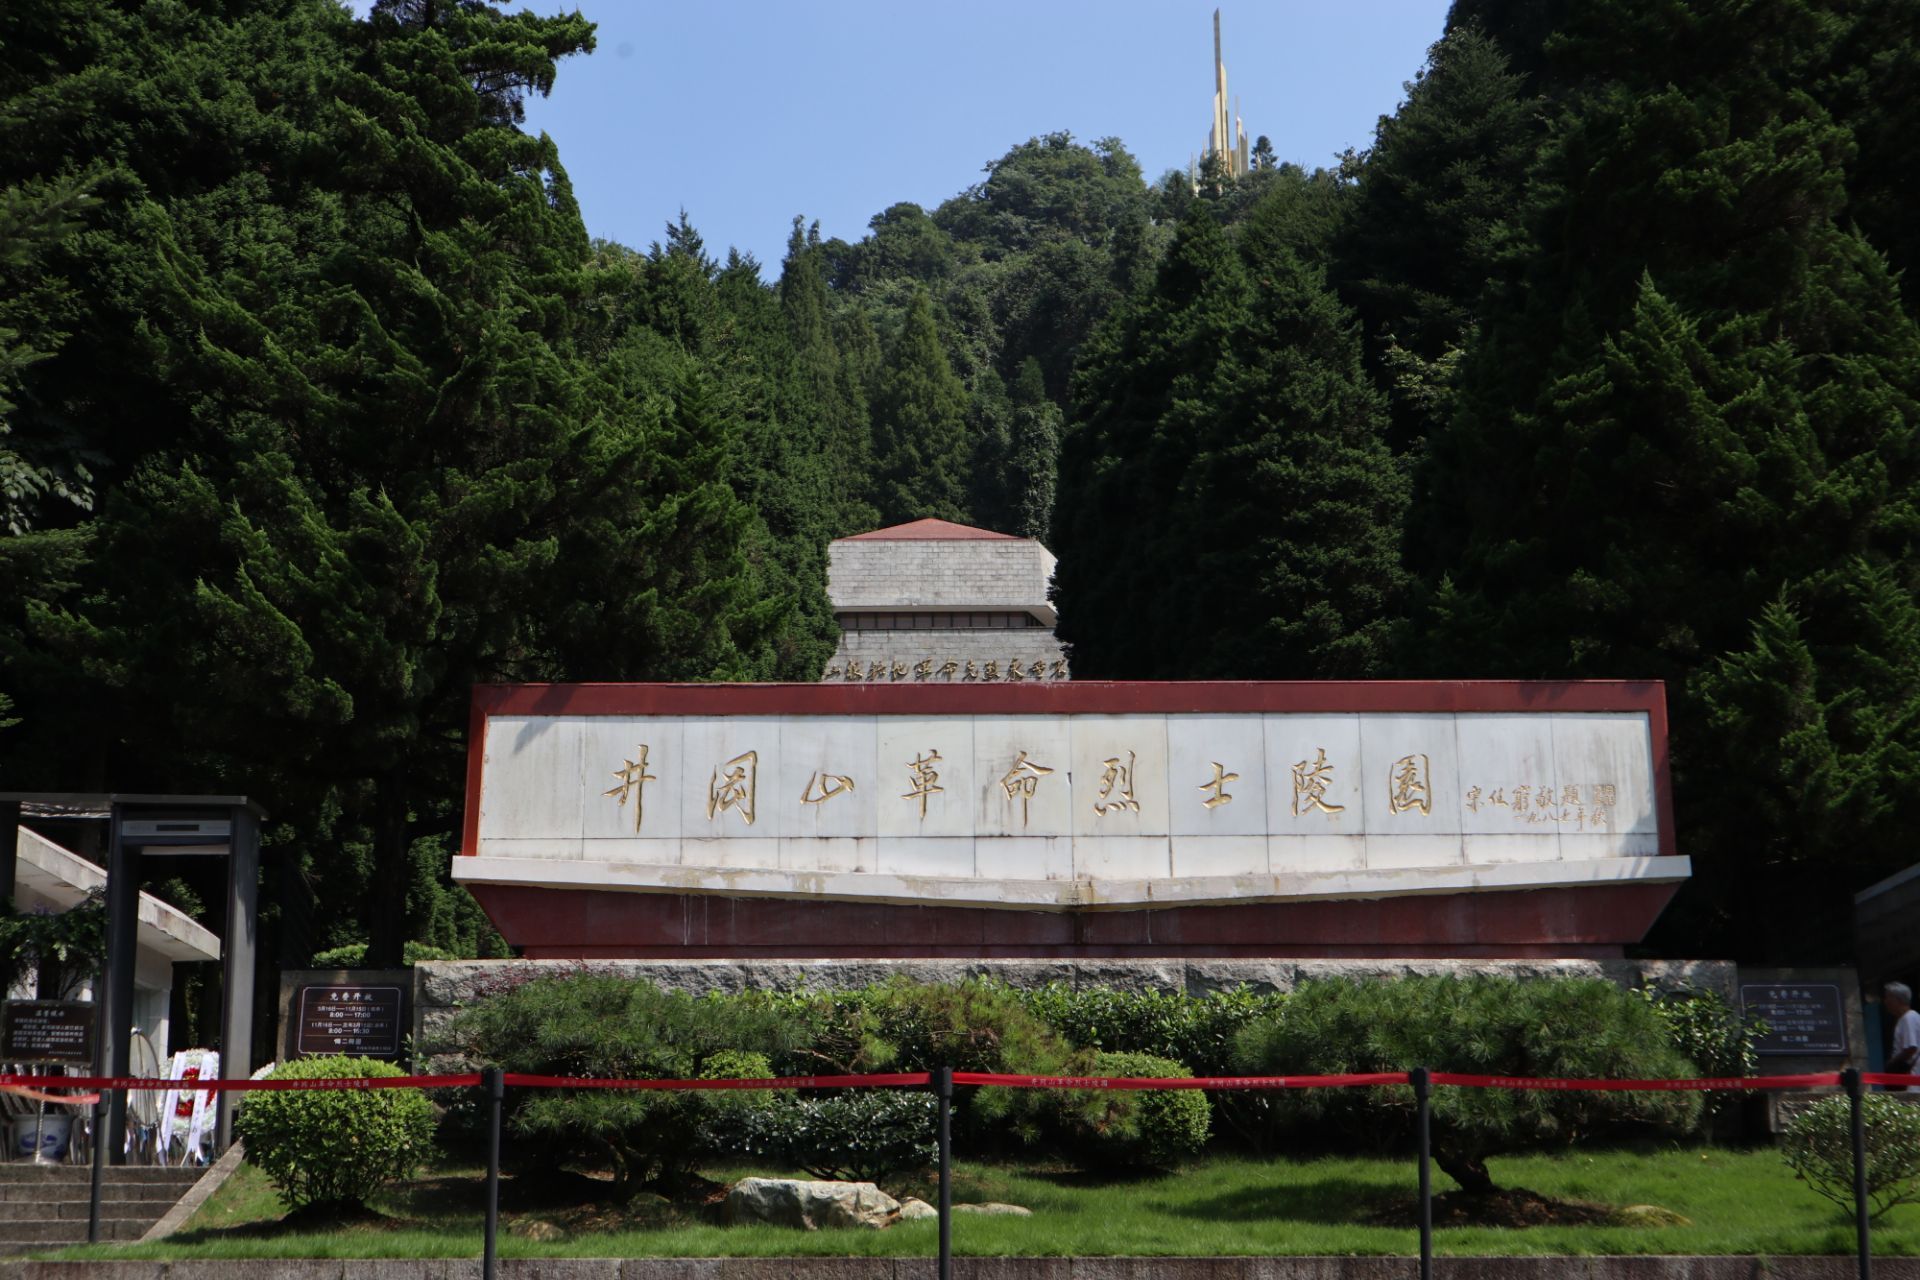 雕塑园,纪念碑,碑林4个部分,纪念馆里陈列了参加井冈山革命斗争的一些